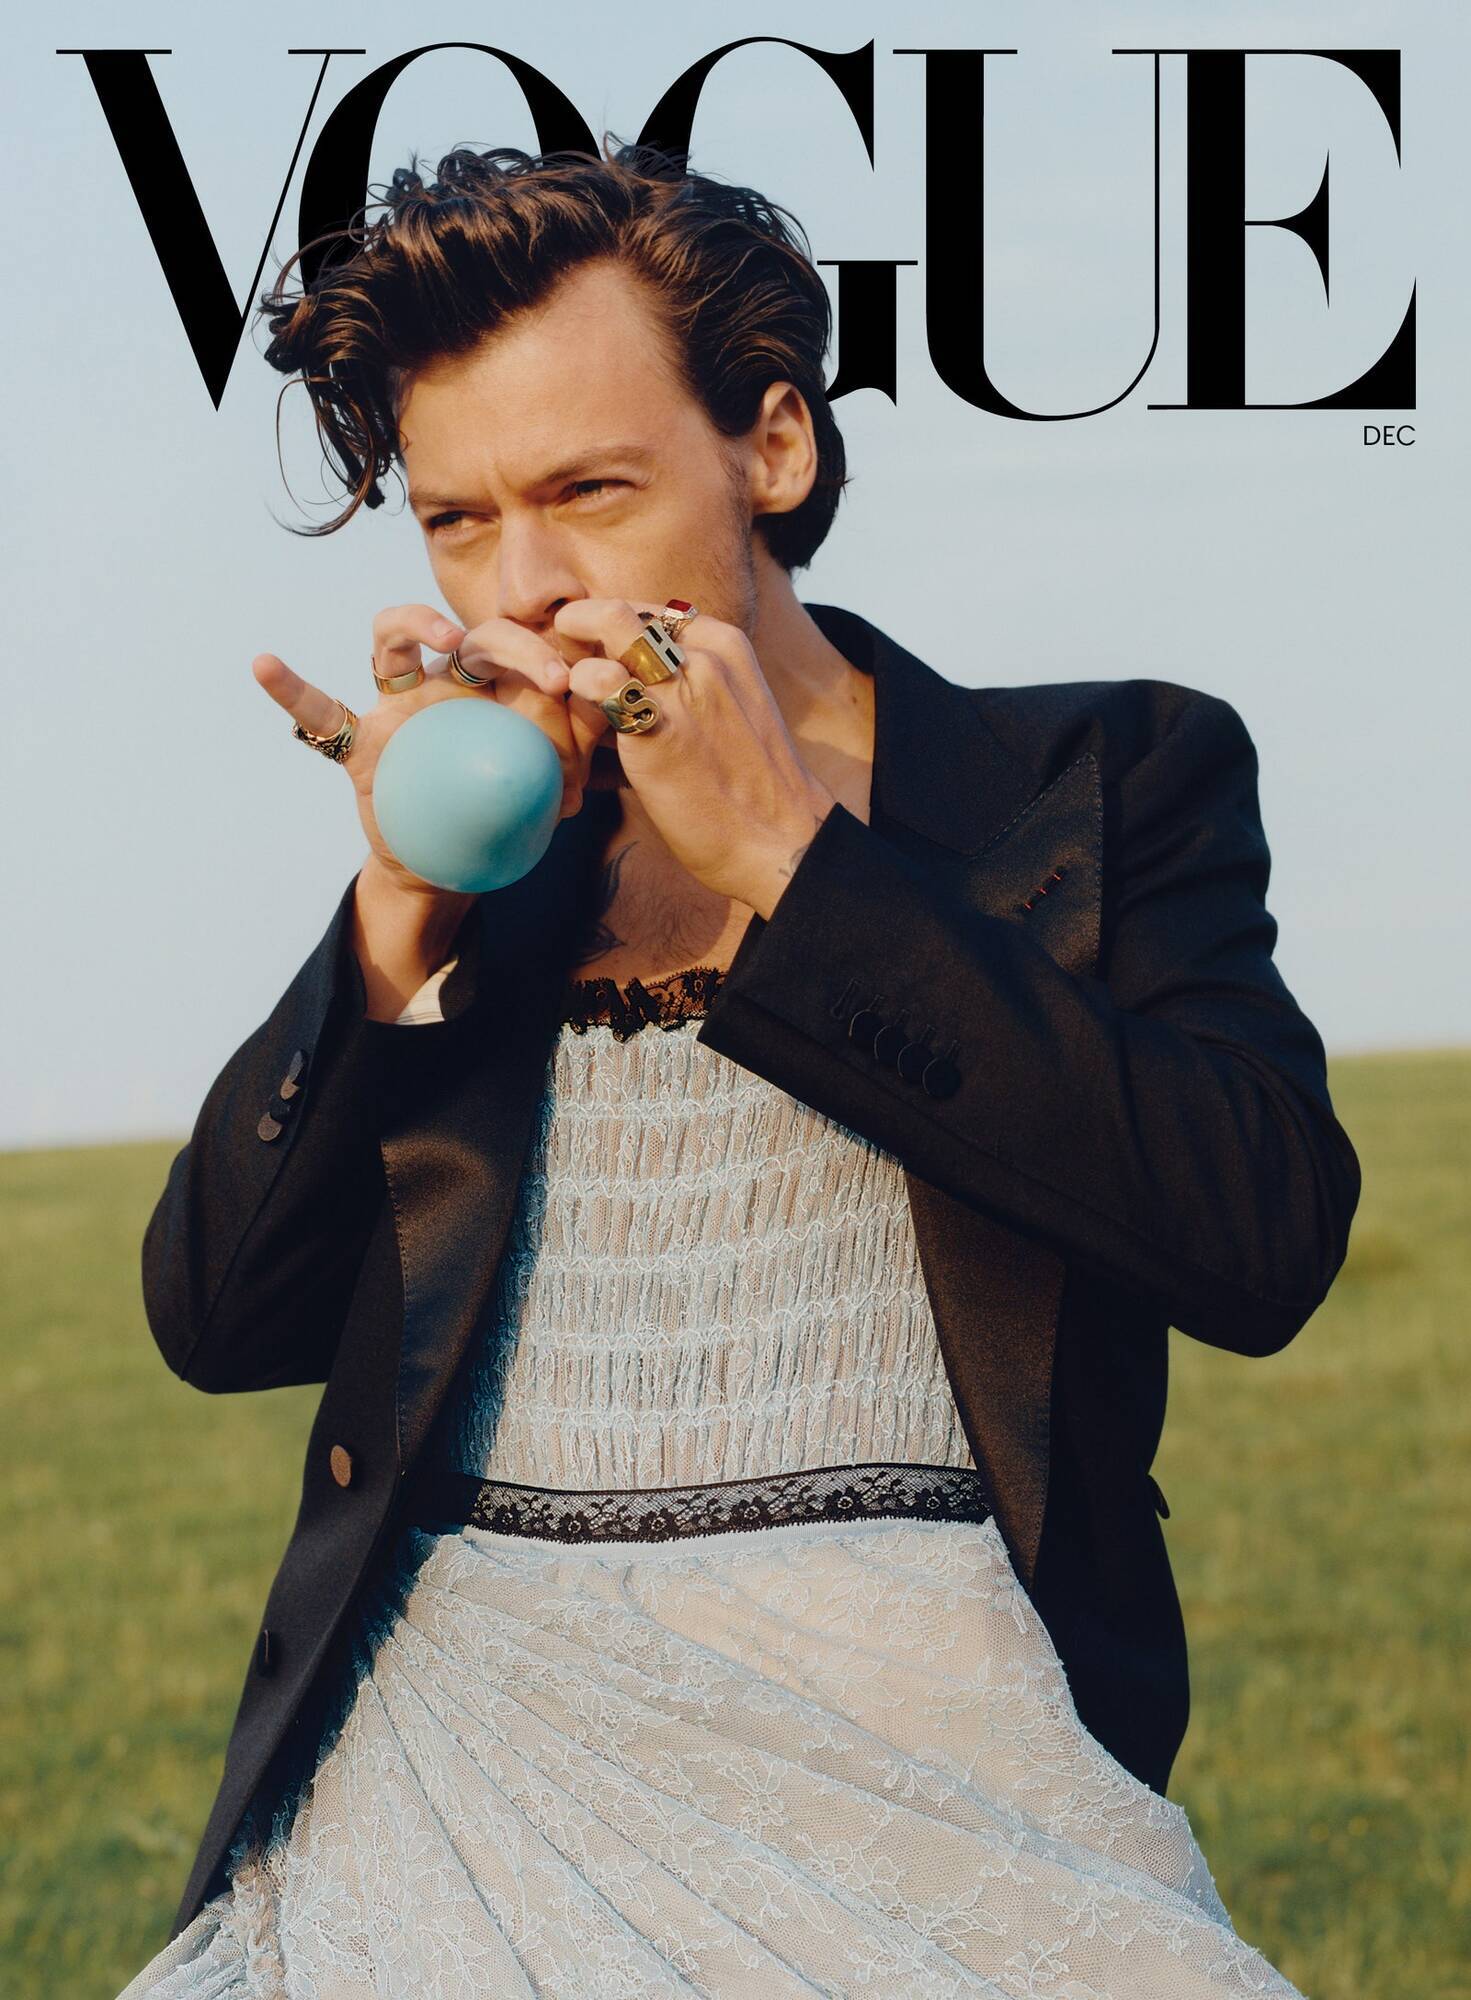 Гарри Стайлс появился на обложке журнала "Vogue" в женской одежде